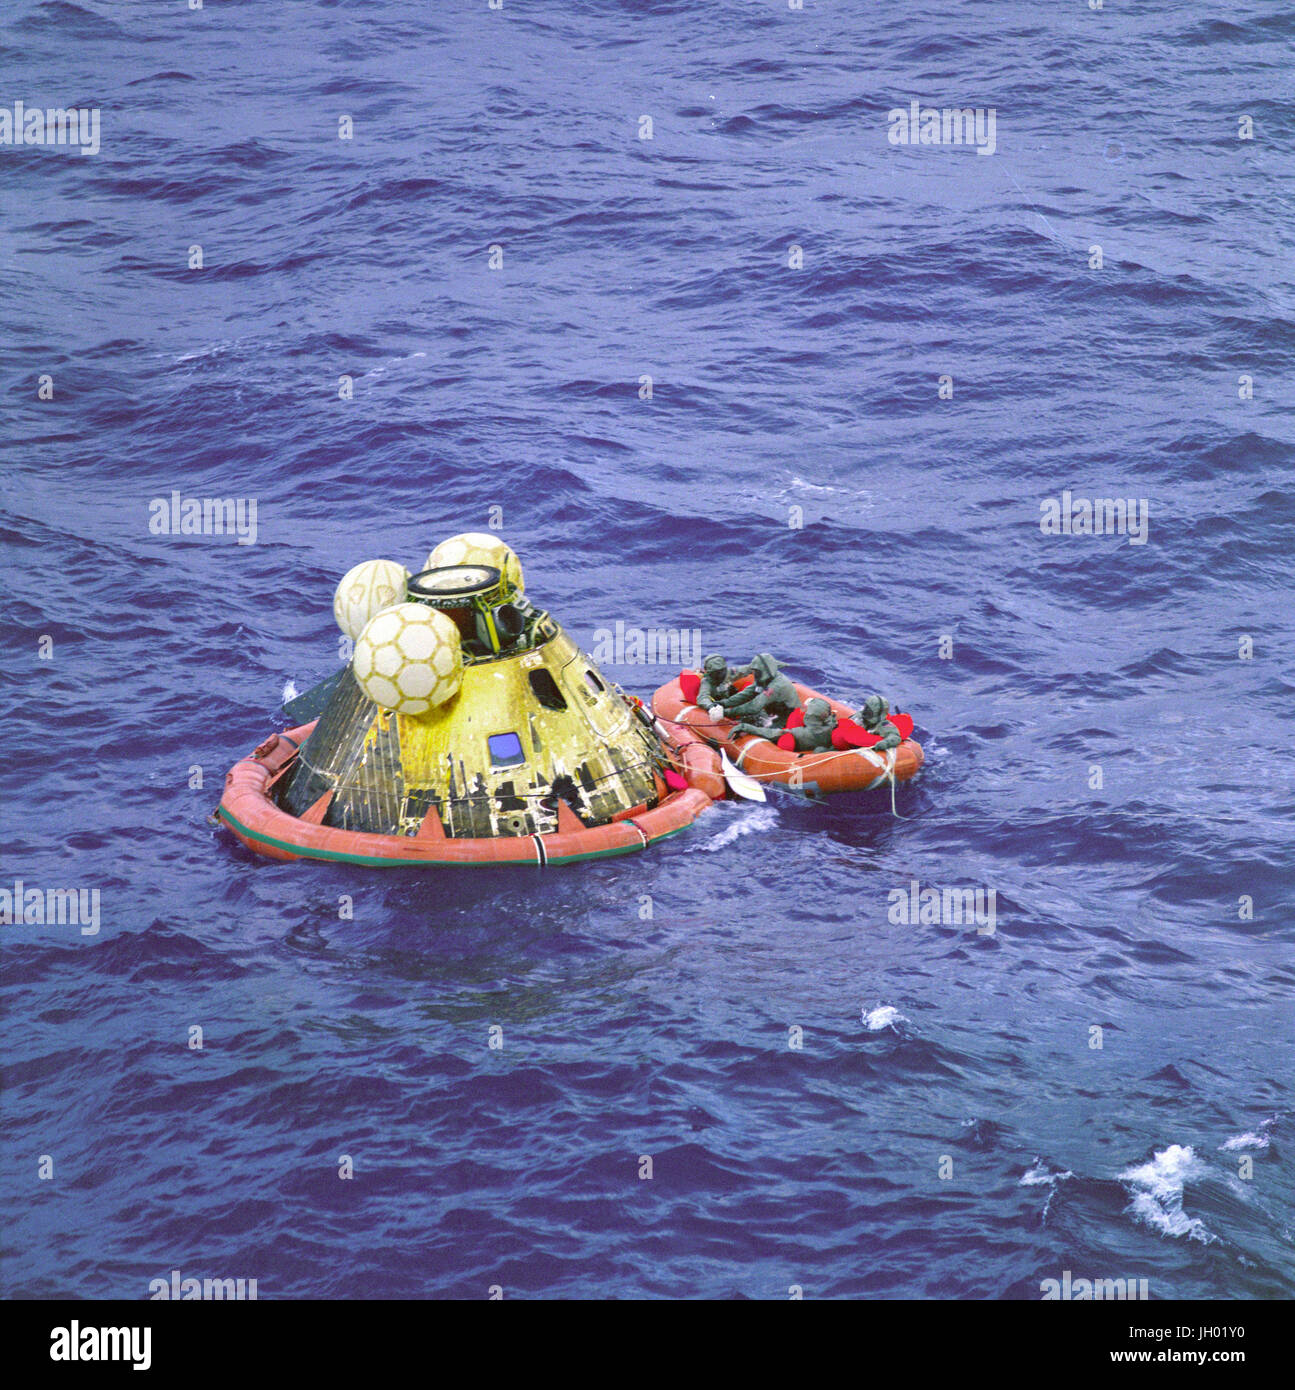 L'équipage d'Apollo 11 attendent d'un hélicoptère à partir de l'USS Hornet, premier navire de récupération de l'historique mission Apollo 11 lunar landing. Le quatrième homme dans le radeau de survie est un nageur de l'équipe de démolition sous-marine. Les quatre hommes portent des vêtements d'Isolation biologique (BIG). Le module de commande Apollo 11, 'Colombie-Britannique' avec les astronautes Neil A. Armstrong, Michael Collins et Edwin E. Aldrin Jr. éclaboussé jusqu'à 11 h 49 (HAE), le 24 juillet 1969, à environ 812 milles marins au sud-ouest d'Hawaii et seulement 12 milles marins de l'USS Hornet. Banque D'Images